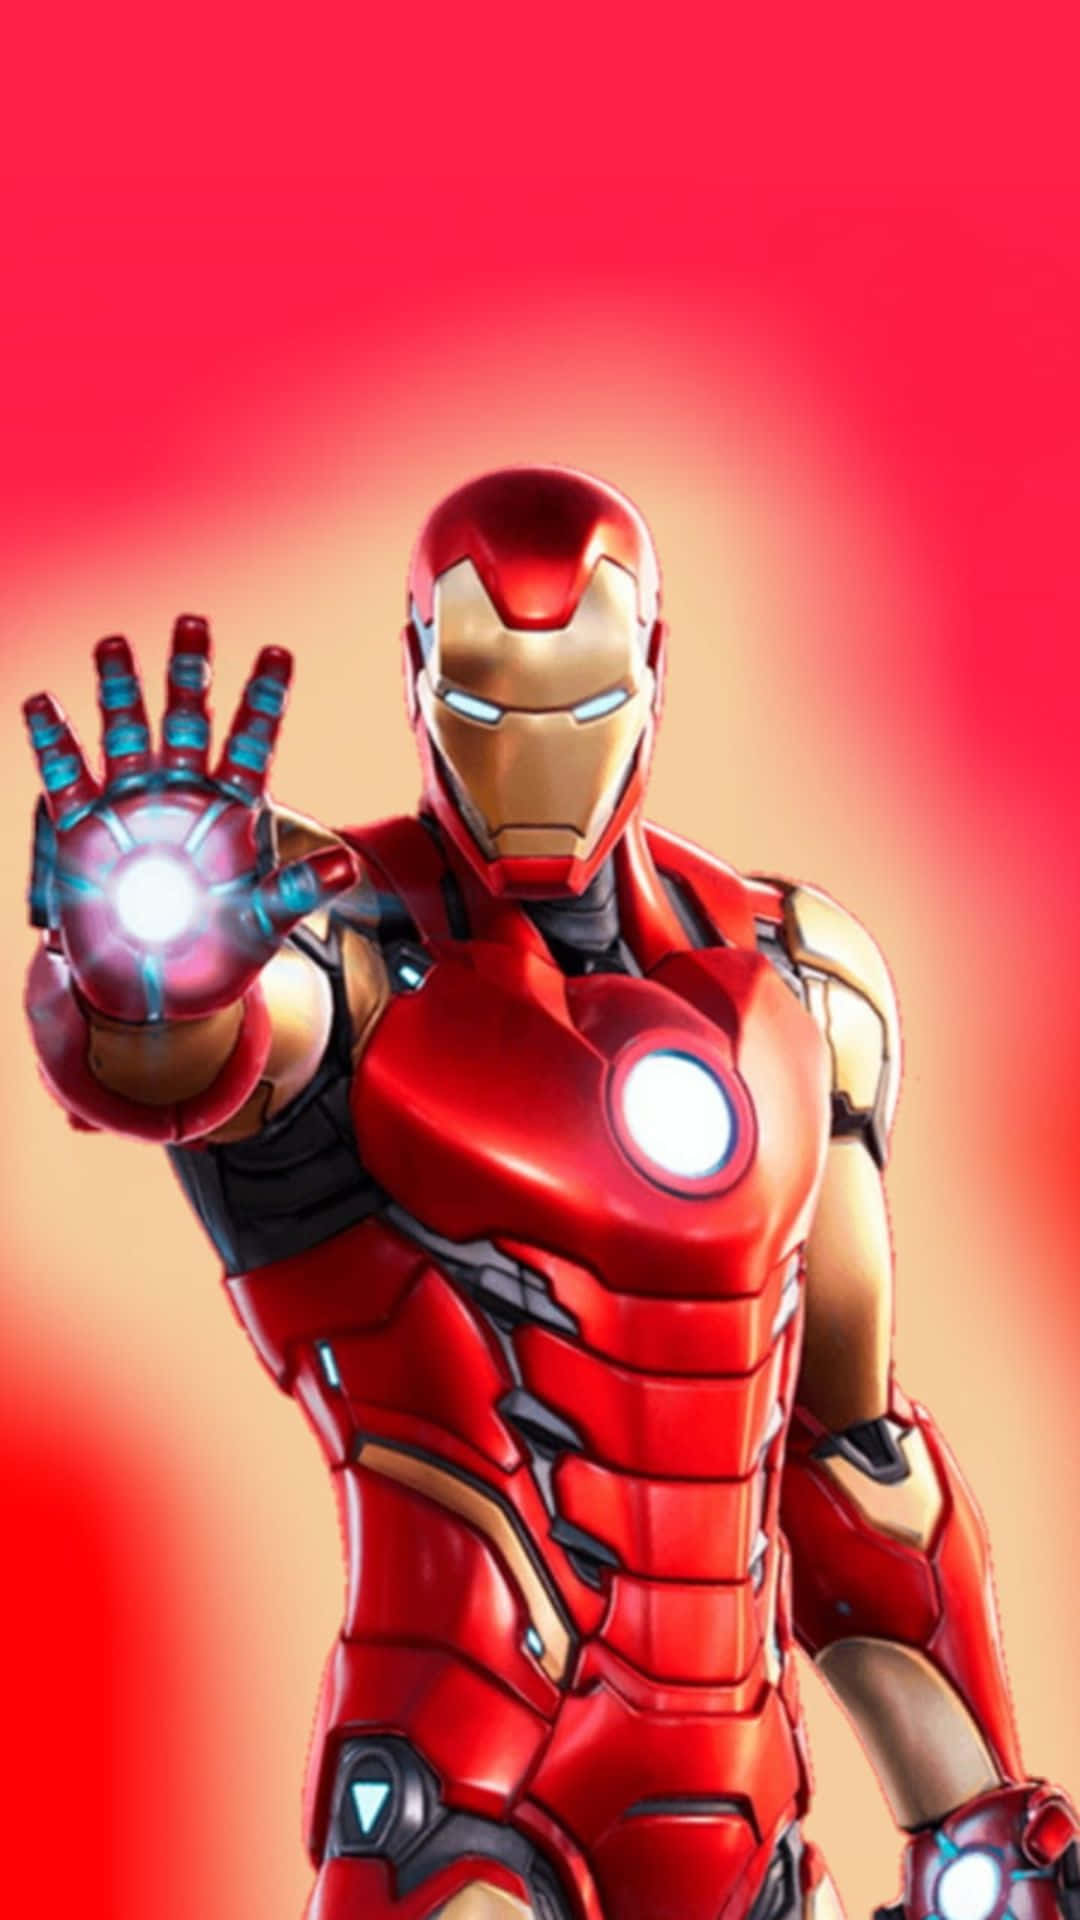 Siicome Iron Man - Personalizza La Schermata Principale Del Tuo Android Con Uno Sfondo A Tema Iron Man.